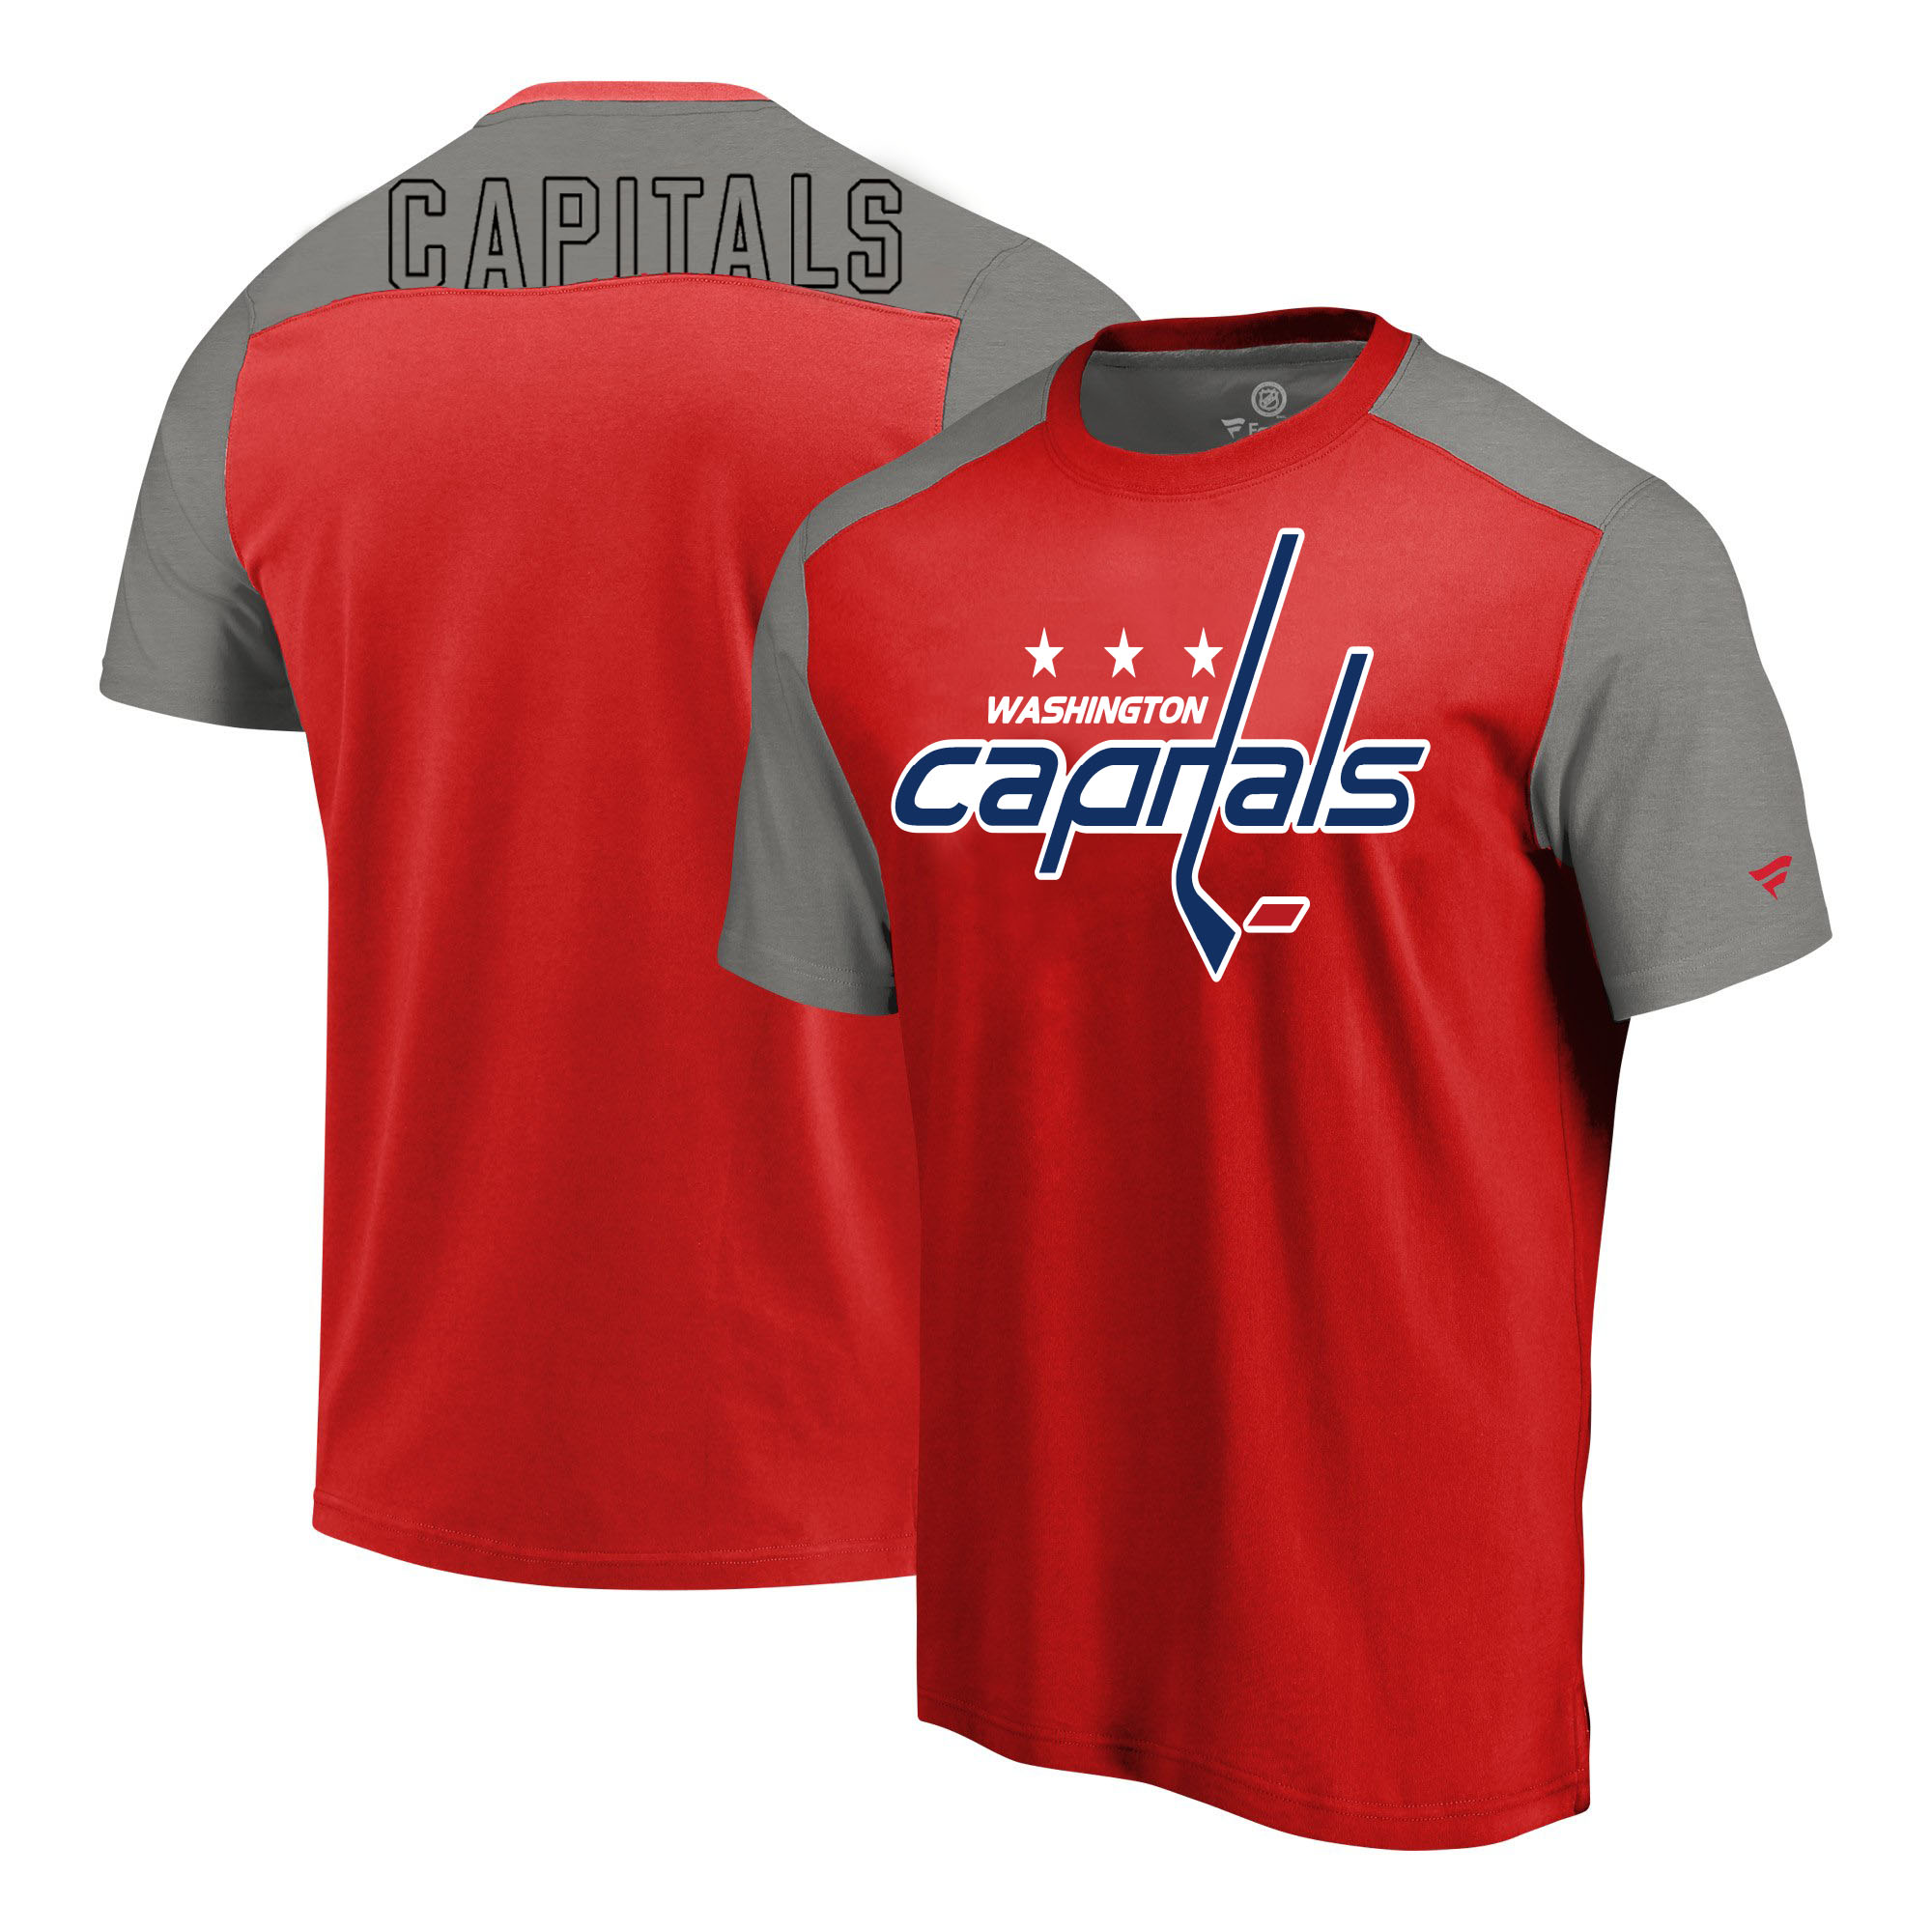 Washington Capitals Fanatics Branded Iconic Blocked T-Shirt Red Heathered Gray